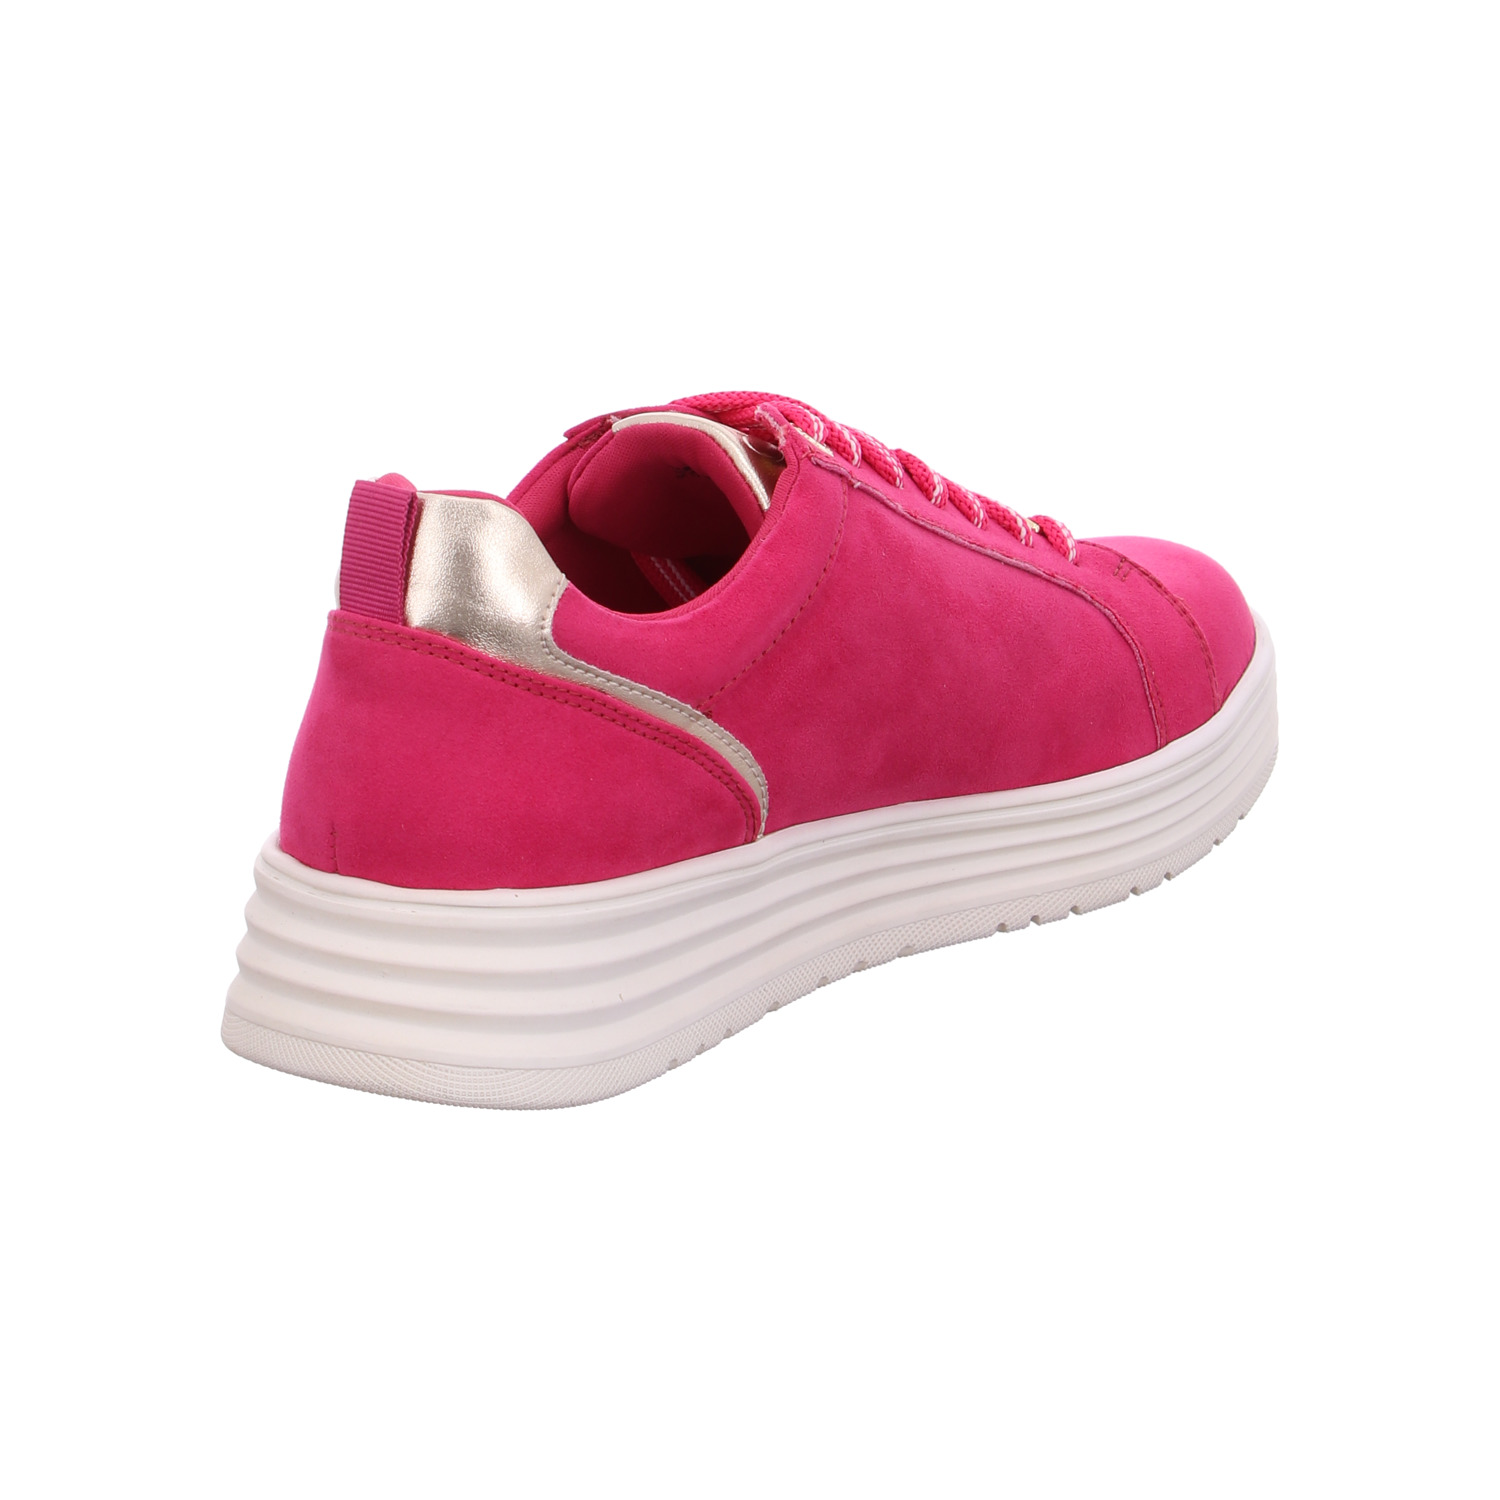 marco-tozzi-sneaker-rosa-124492-1